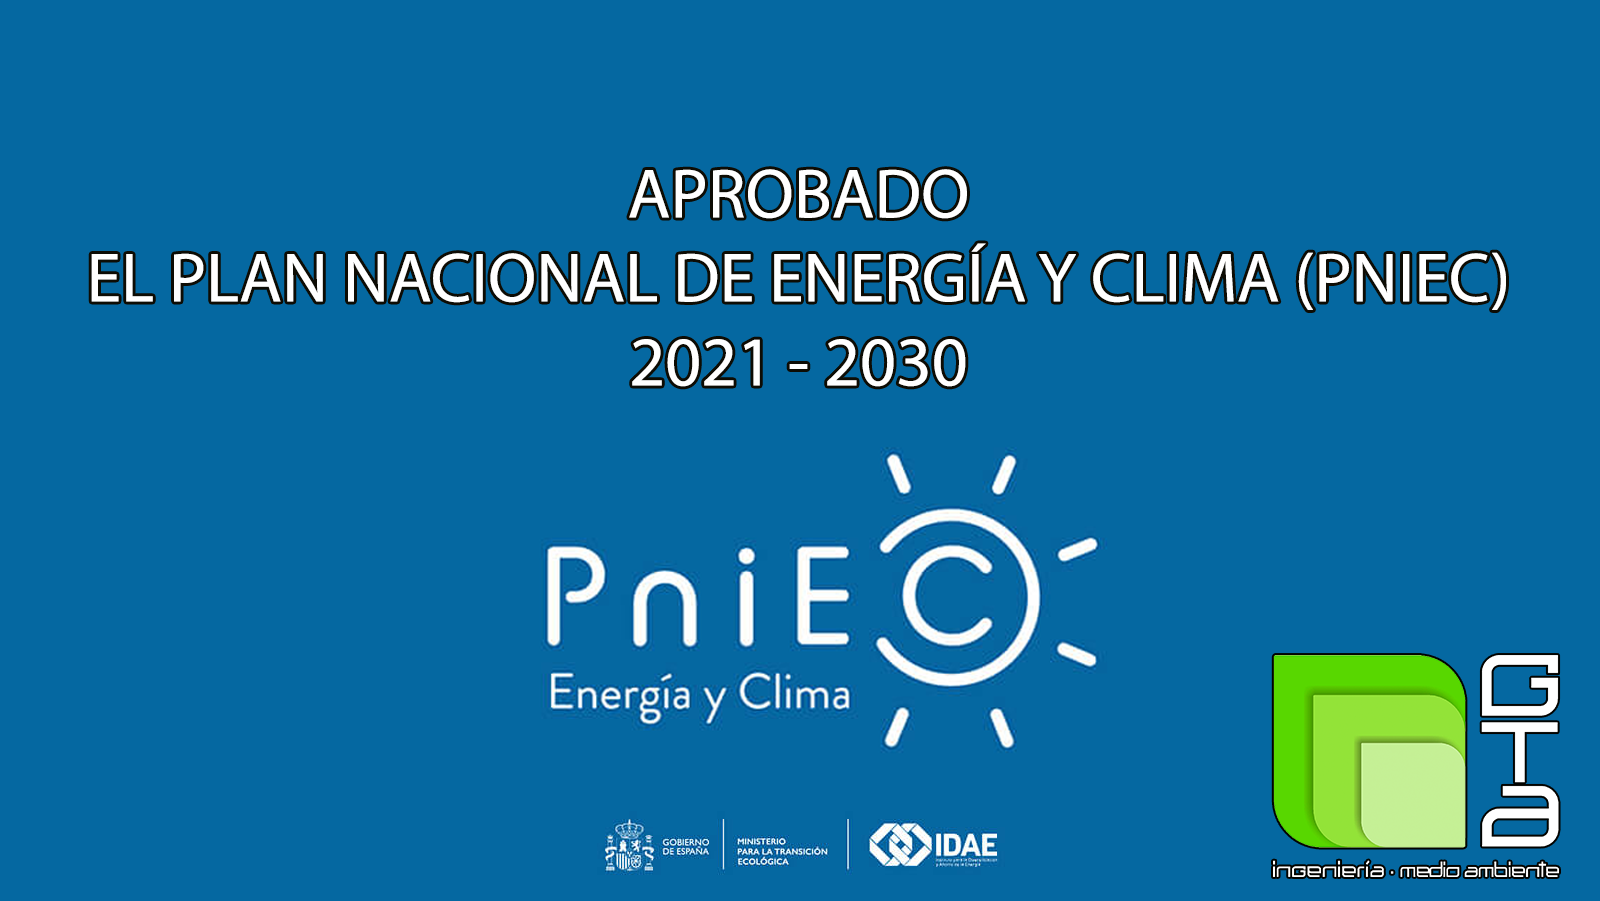 Aprobado el Plan Nacional Integrado de Energía y Clima (PNIEC) 2021-2030